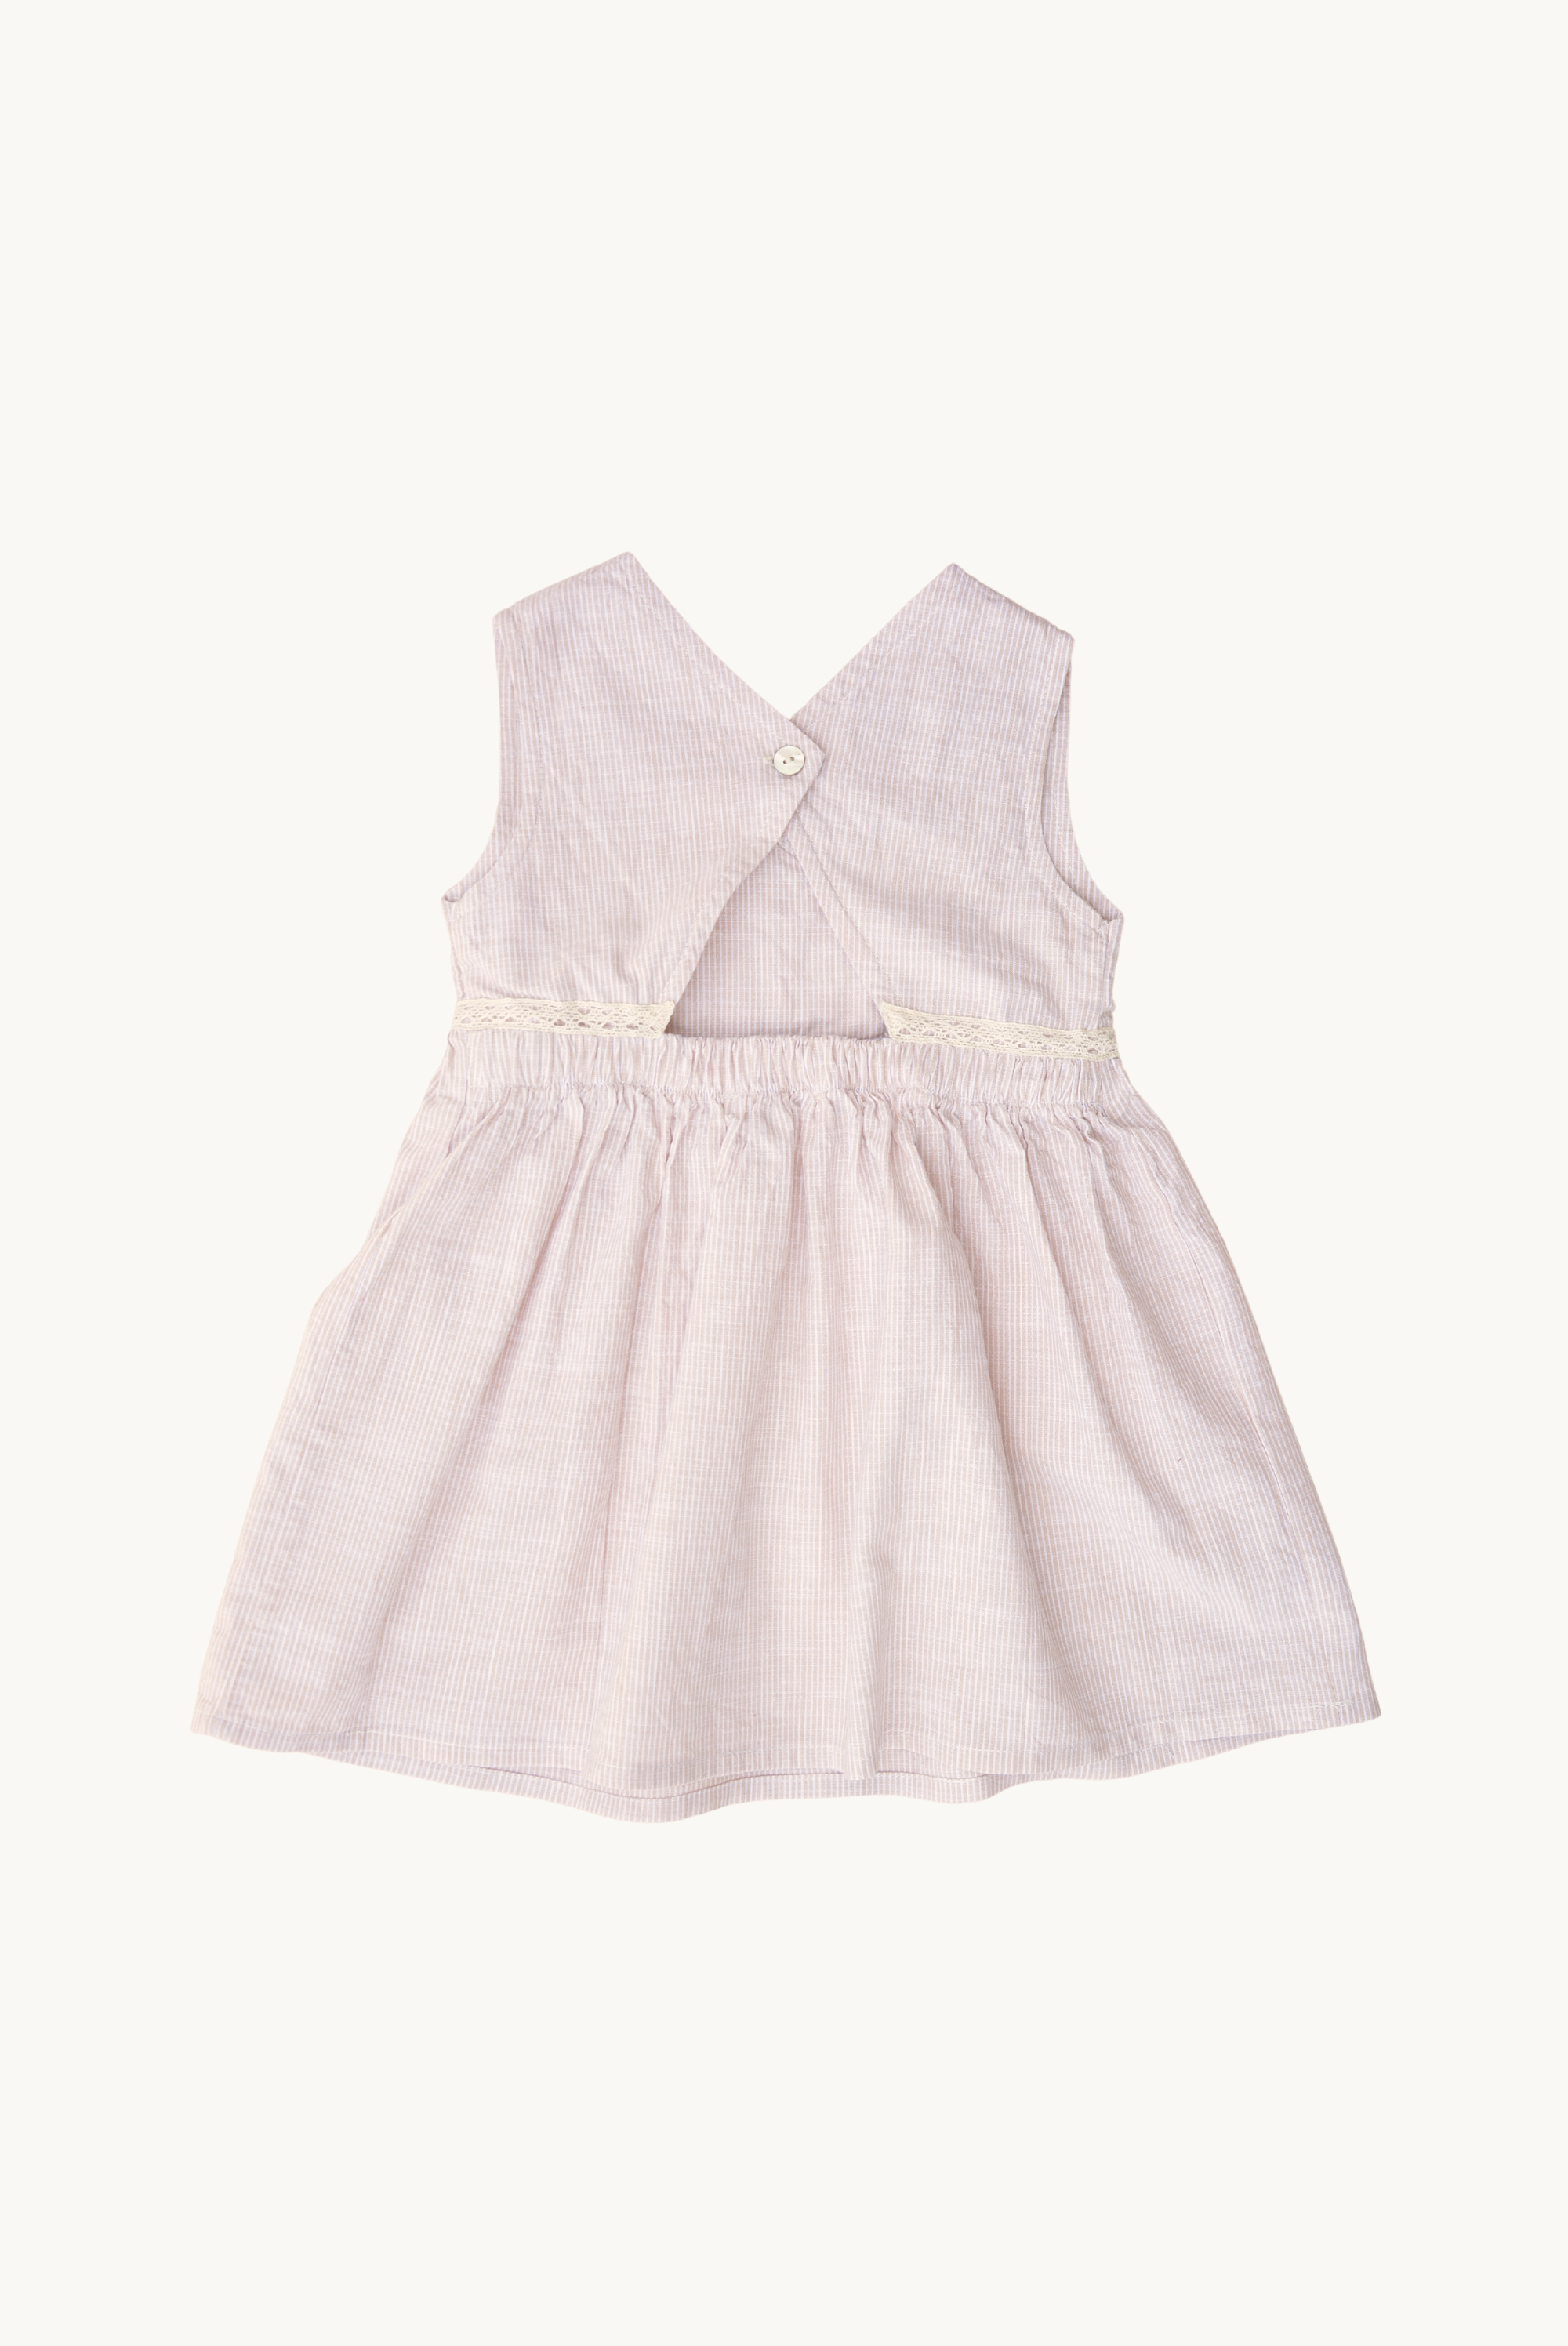 NINON dress - summer dress for babies